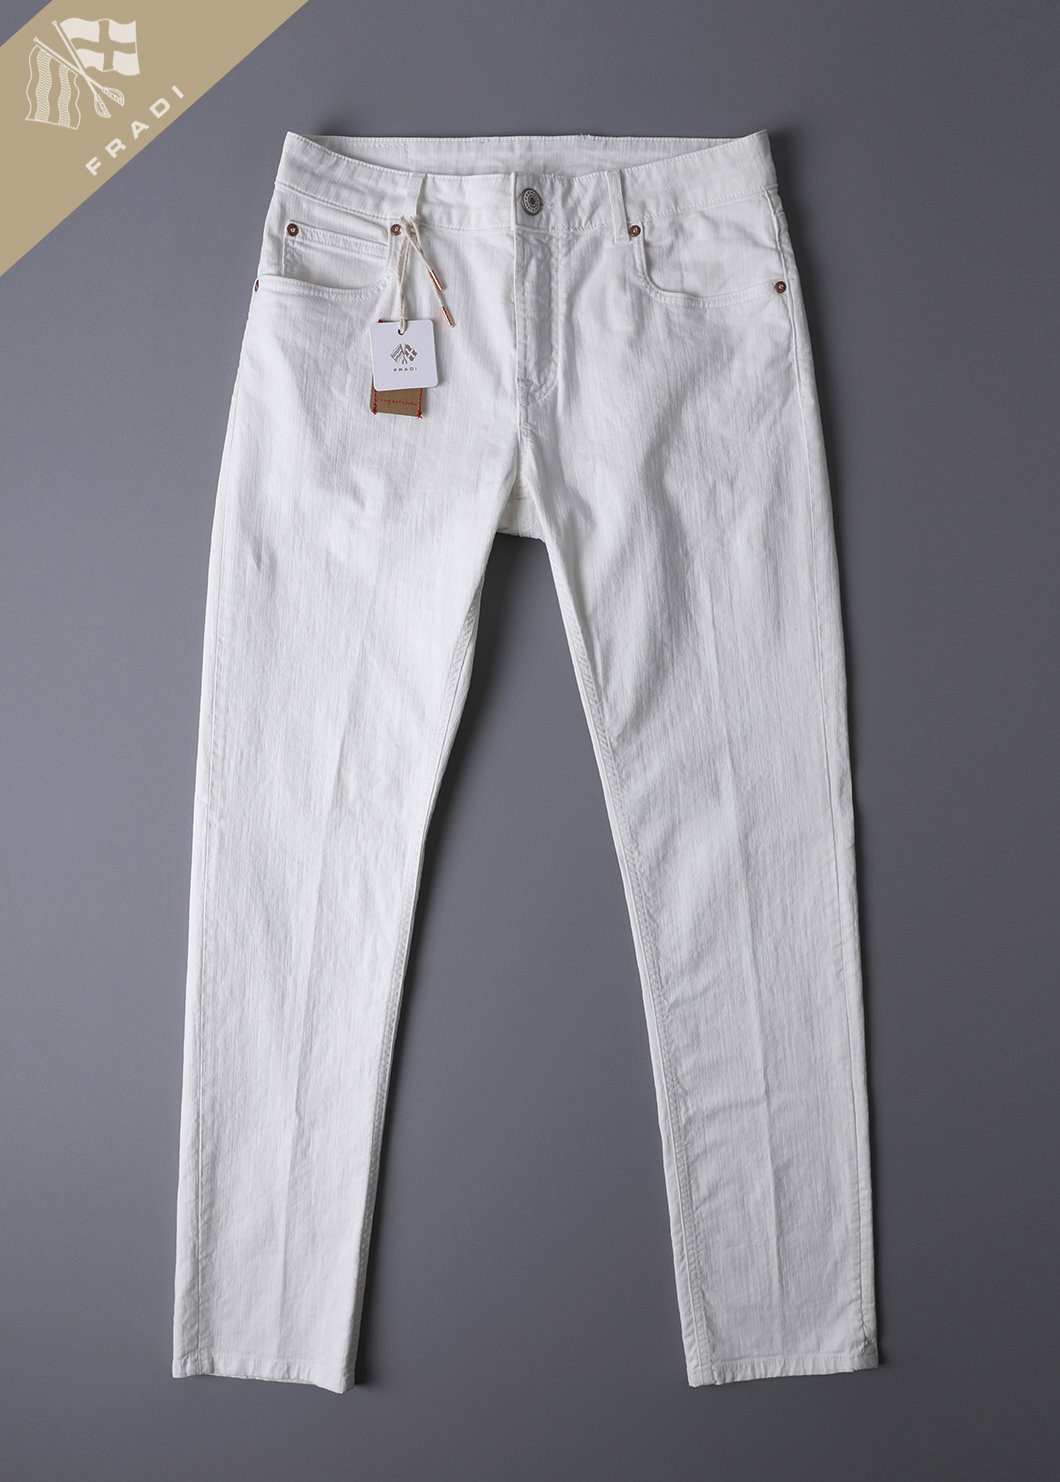 ITALIA Bull Ivory Jeans-Ivory